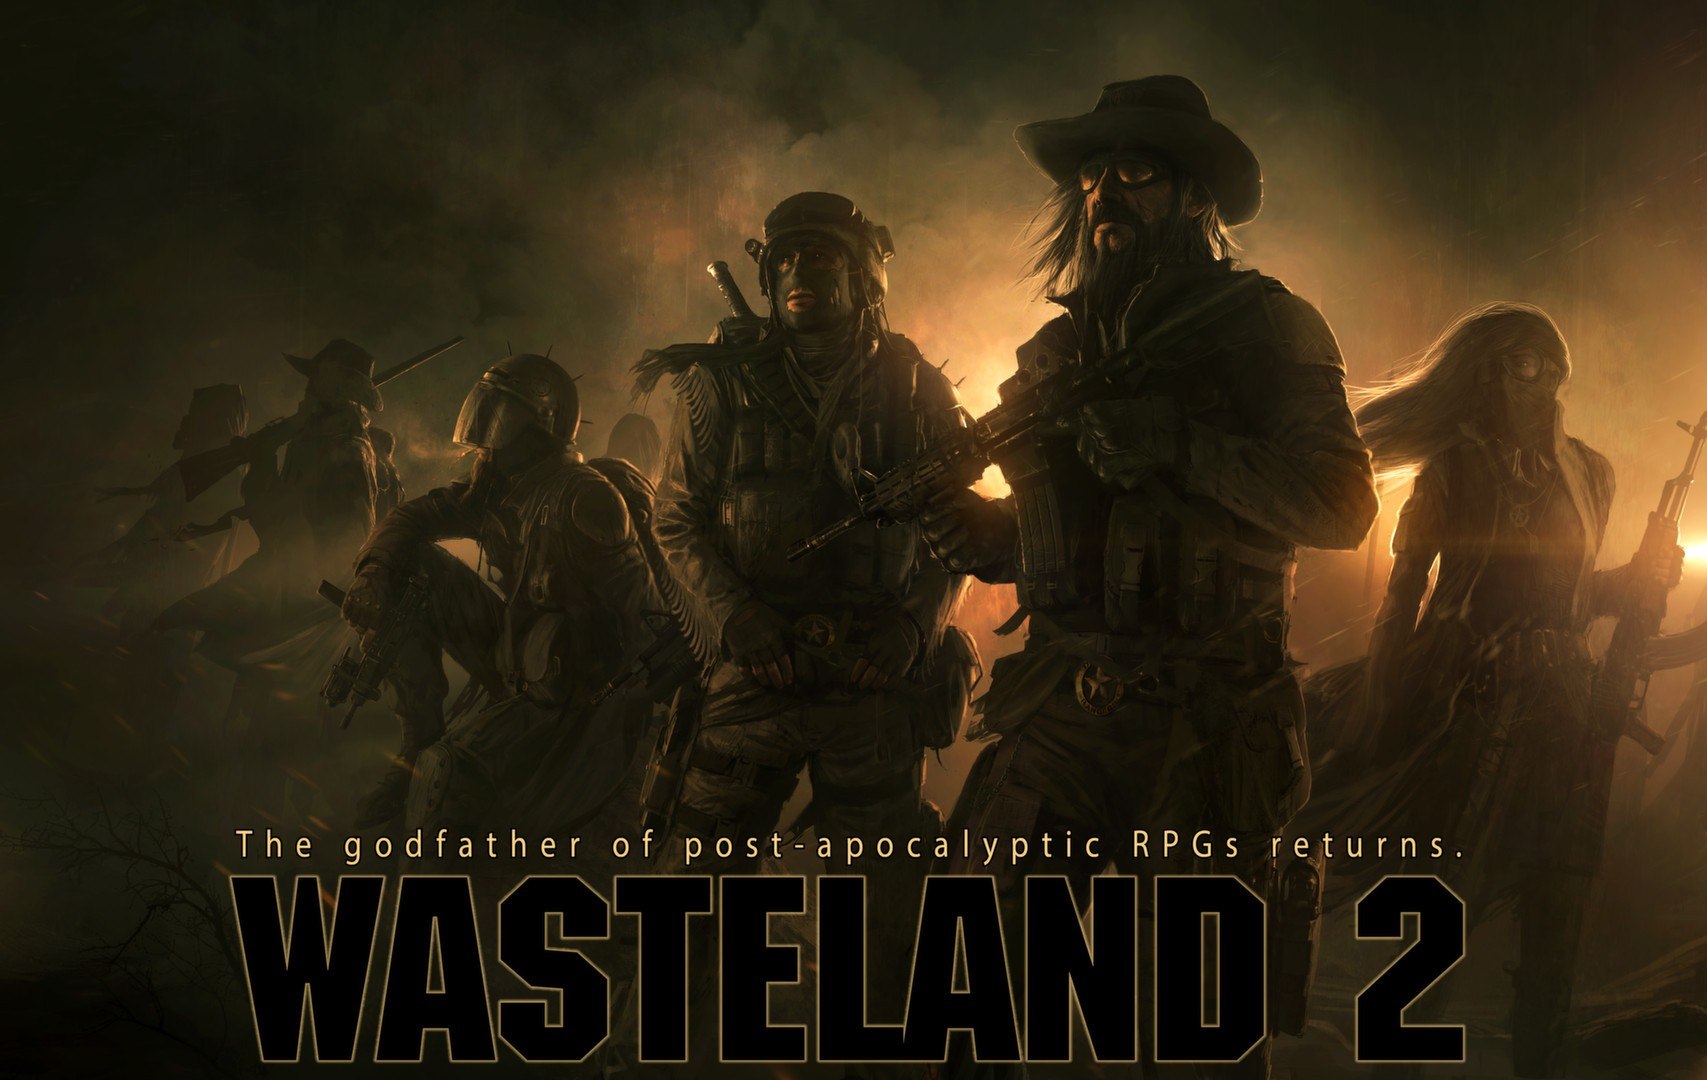 Wasteland 2: Director's Cut - Classic Edition Steam CD Key, 11.19$